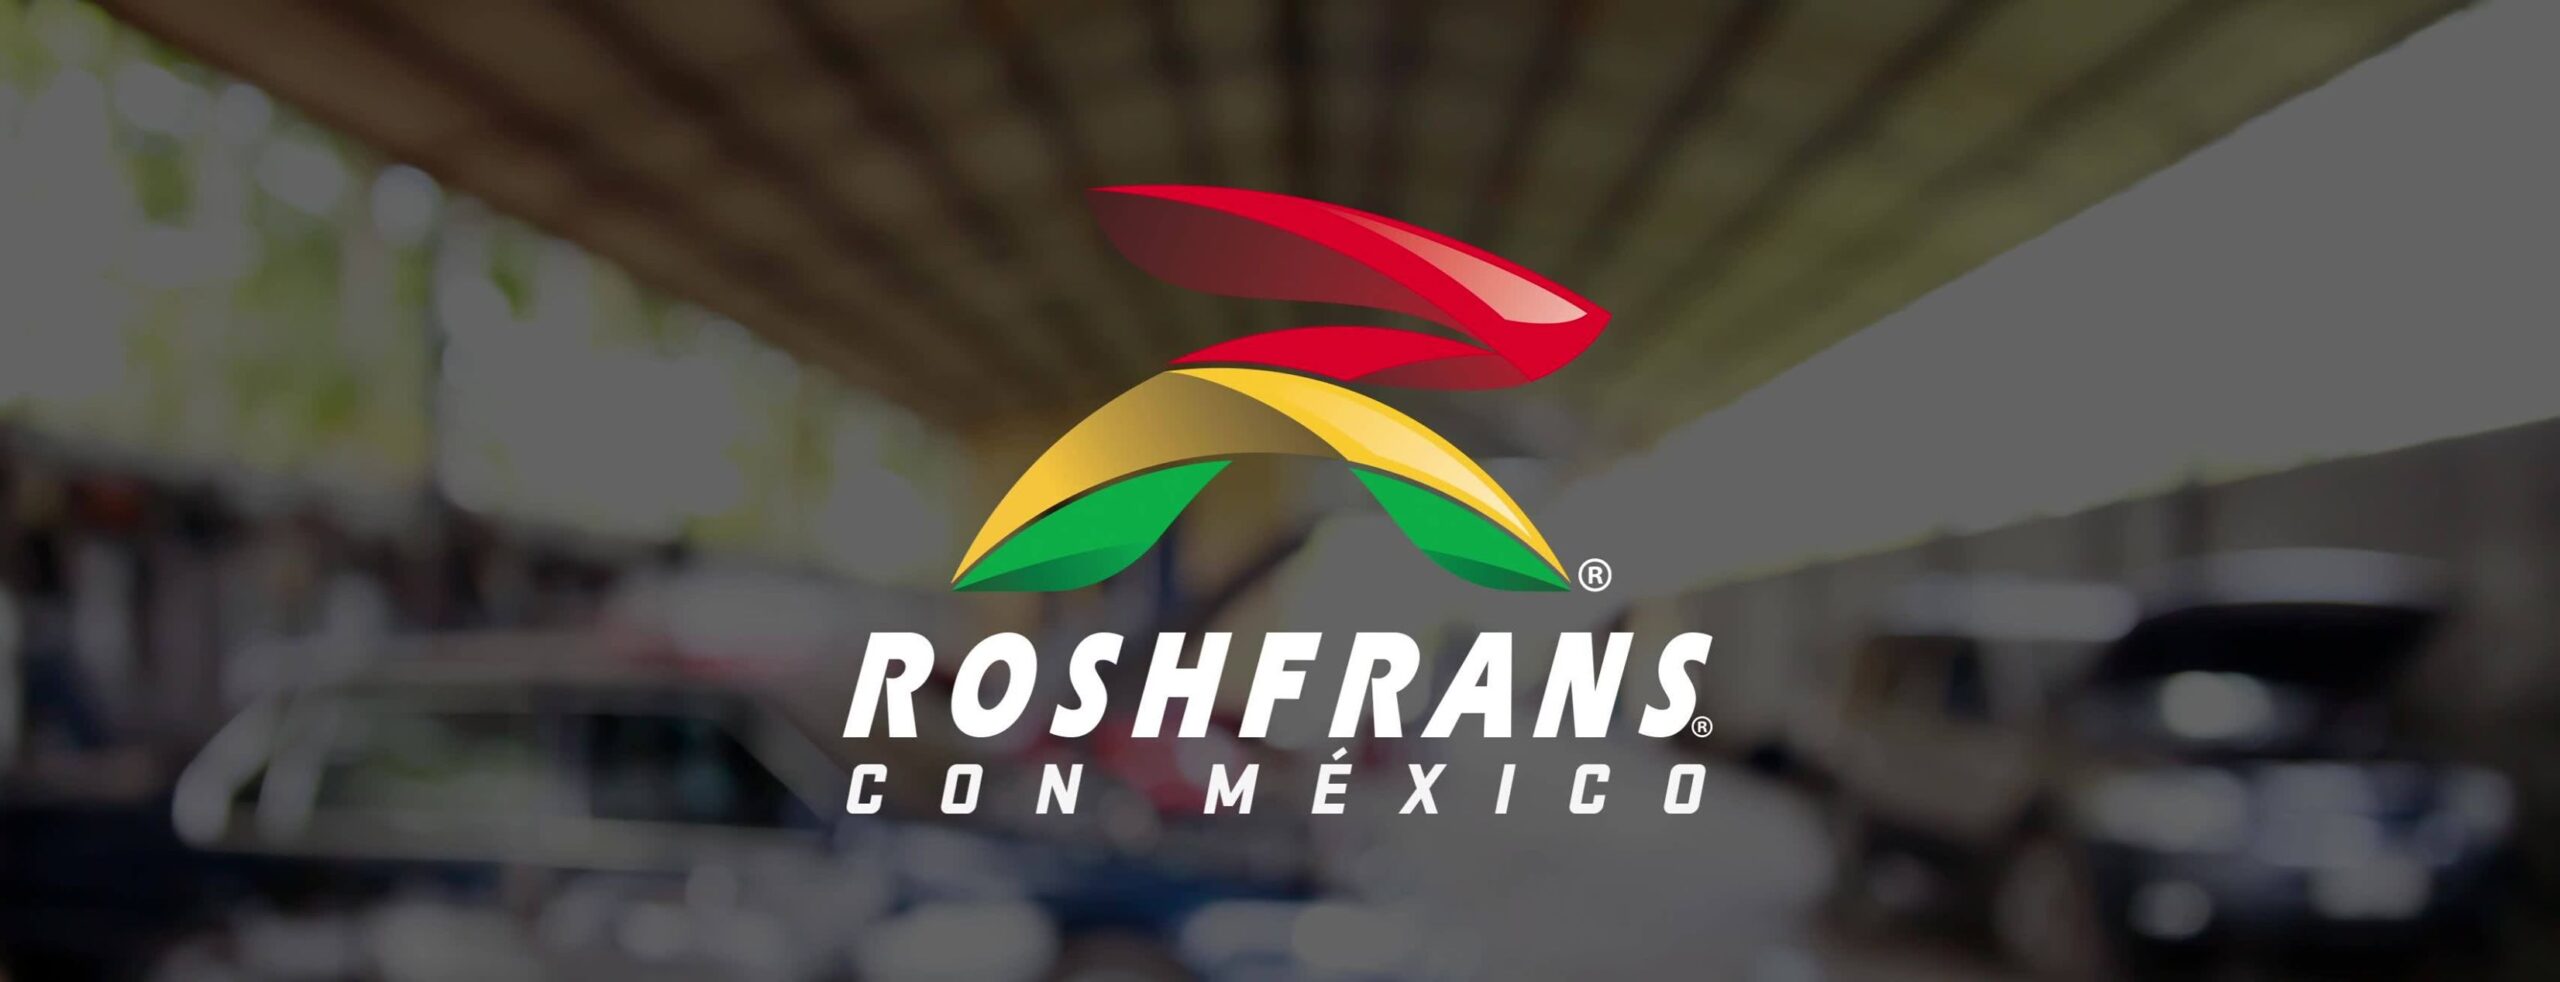 Roshfrans celebra 66 años moviendo a México